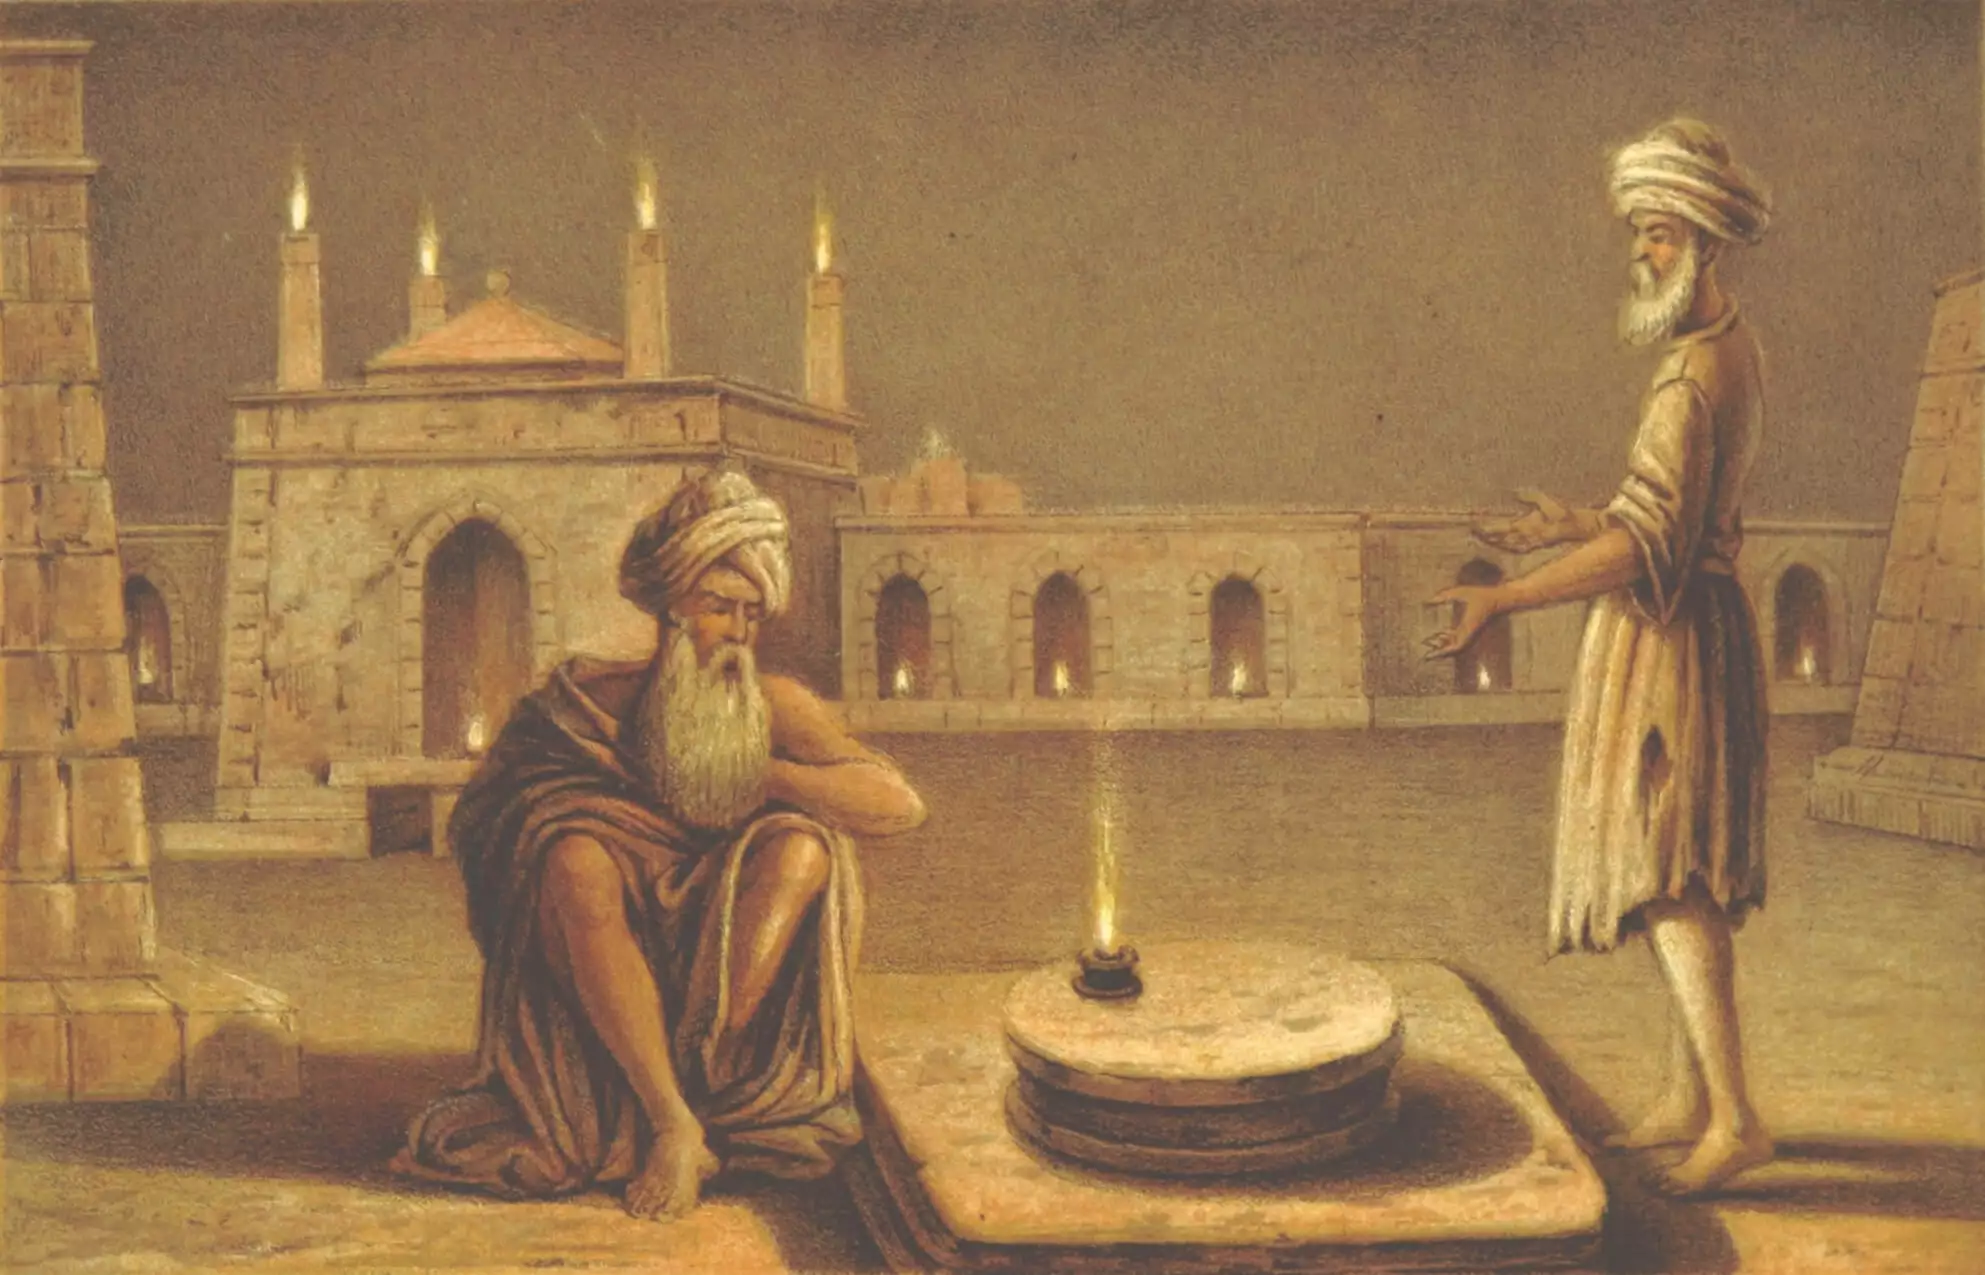 Pintura del 1865 retratando el Templo del Fuego en Baku, por Ussher